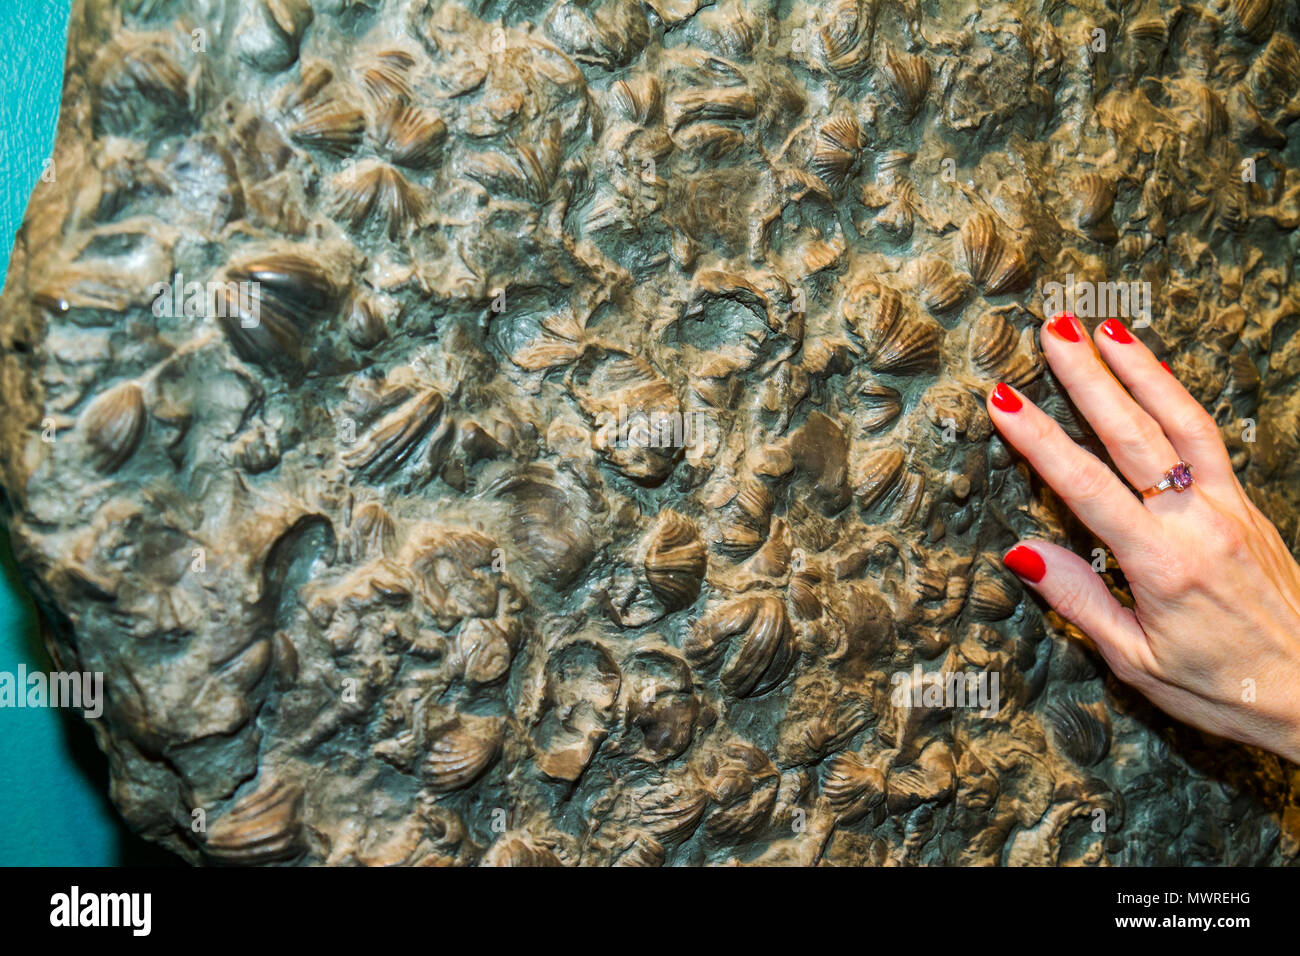 Washington DC,Museo Nacional de Historia Natural,Sala de Sant Ocean,exposición de productos de colección,muestra de fósiles,conchas,mano de mujer,manos,manos Foto de stock